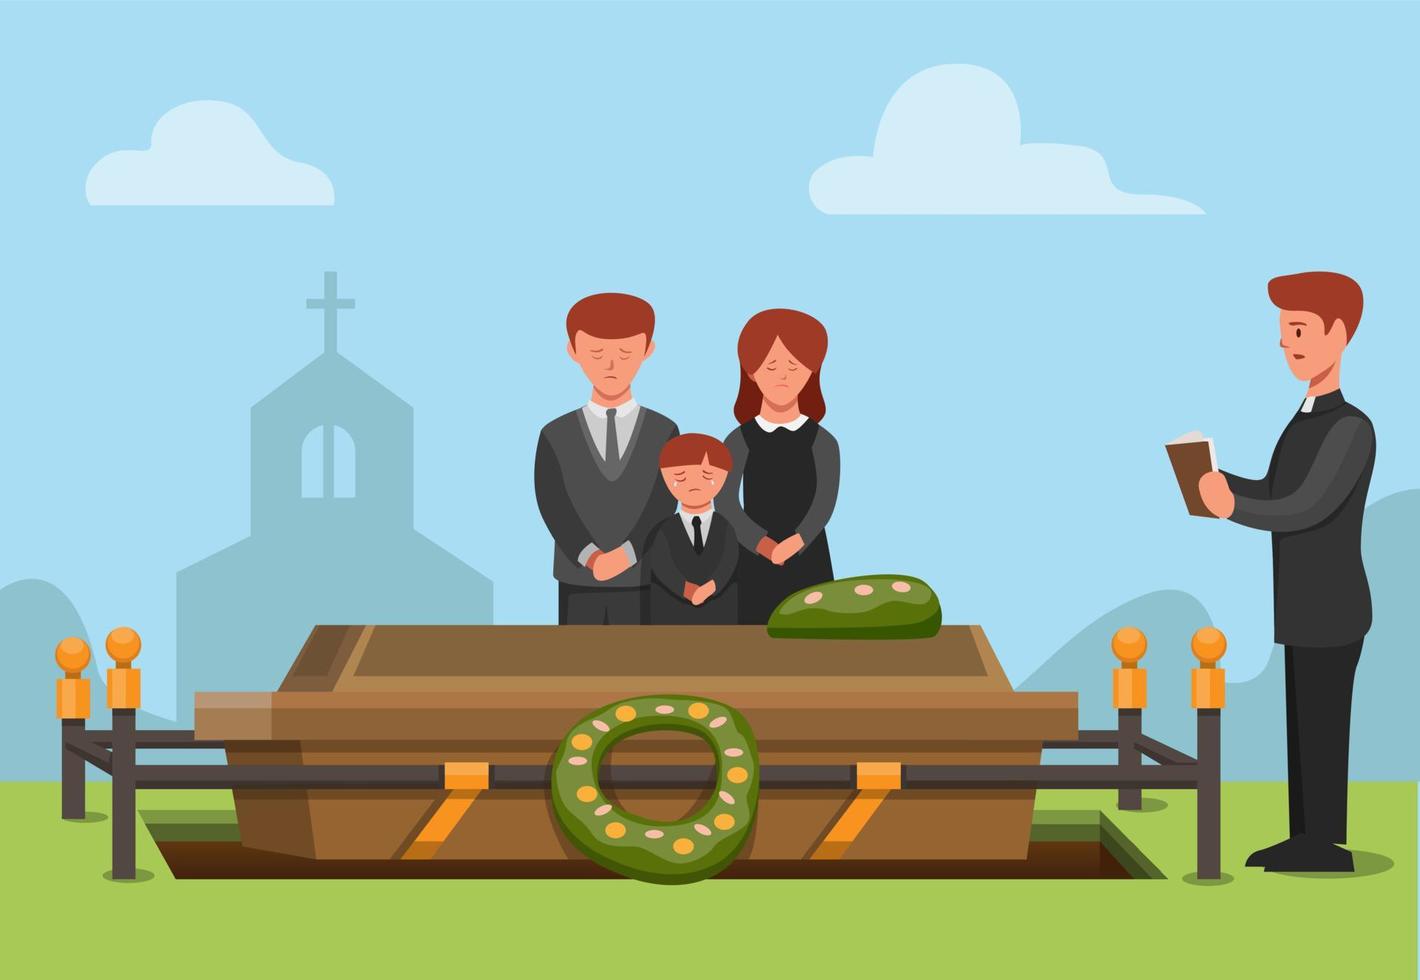 begrafenisceremonie in de christelijke religie. mensen verdrietig familielid overleden concept scène illustratie in cartoon vector